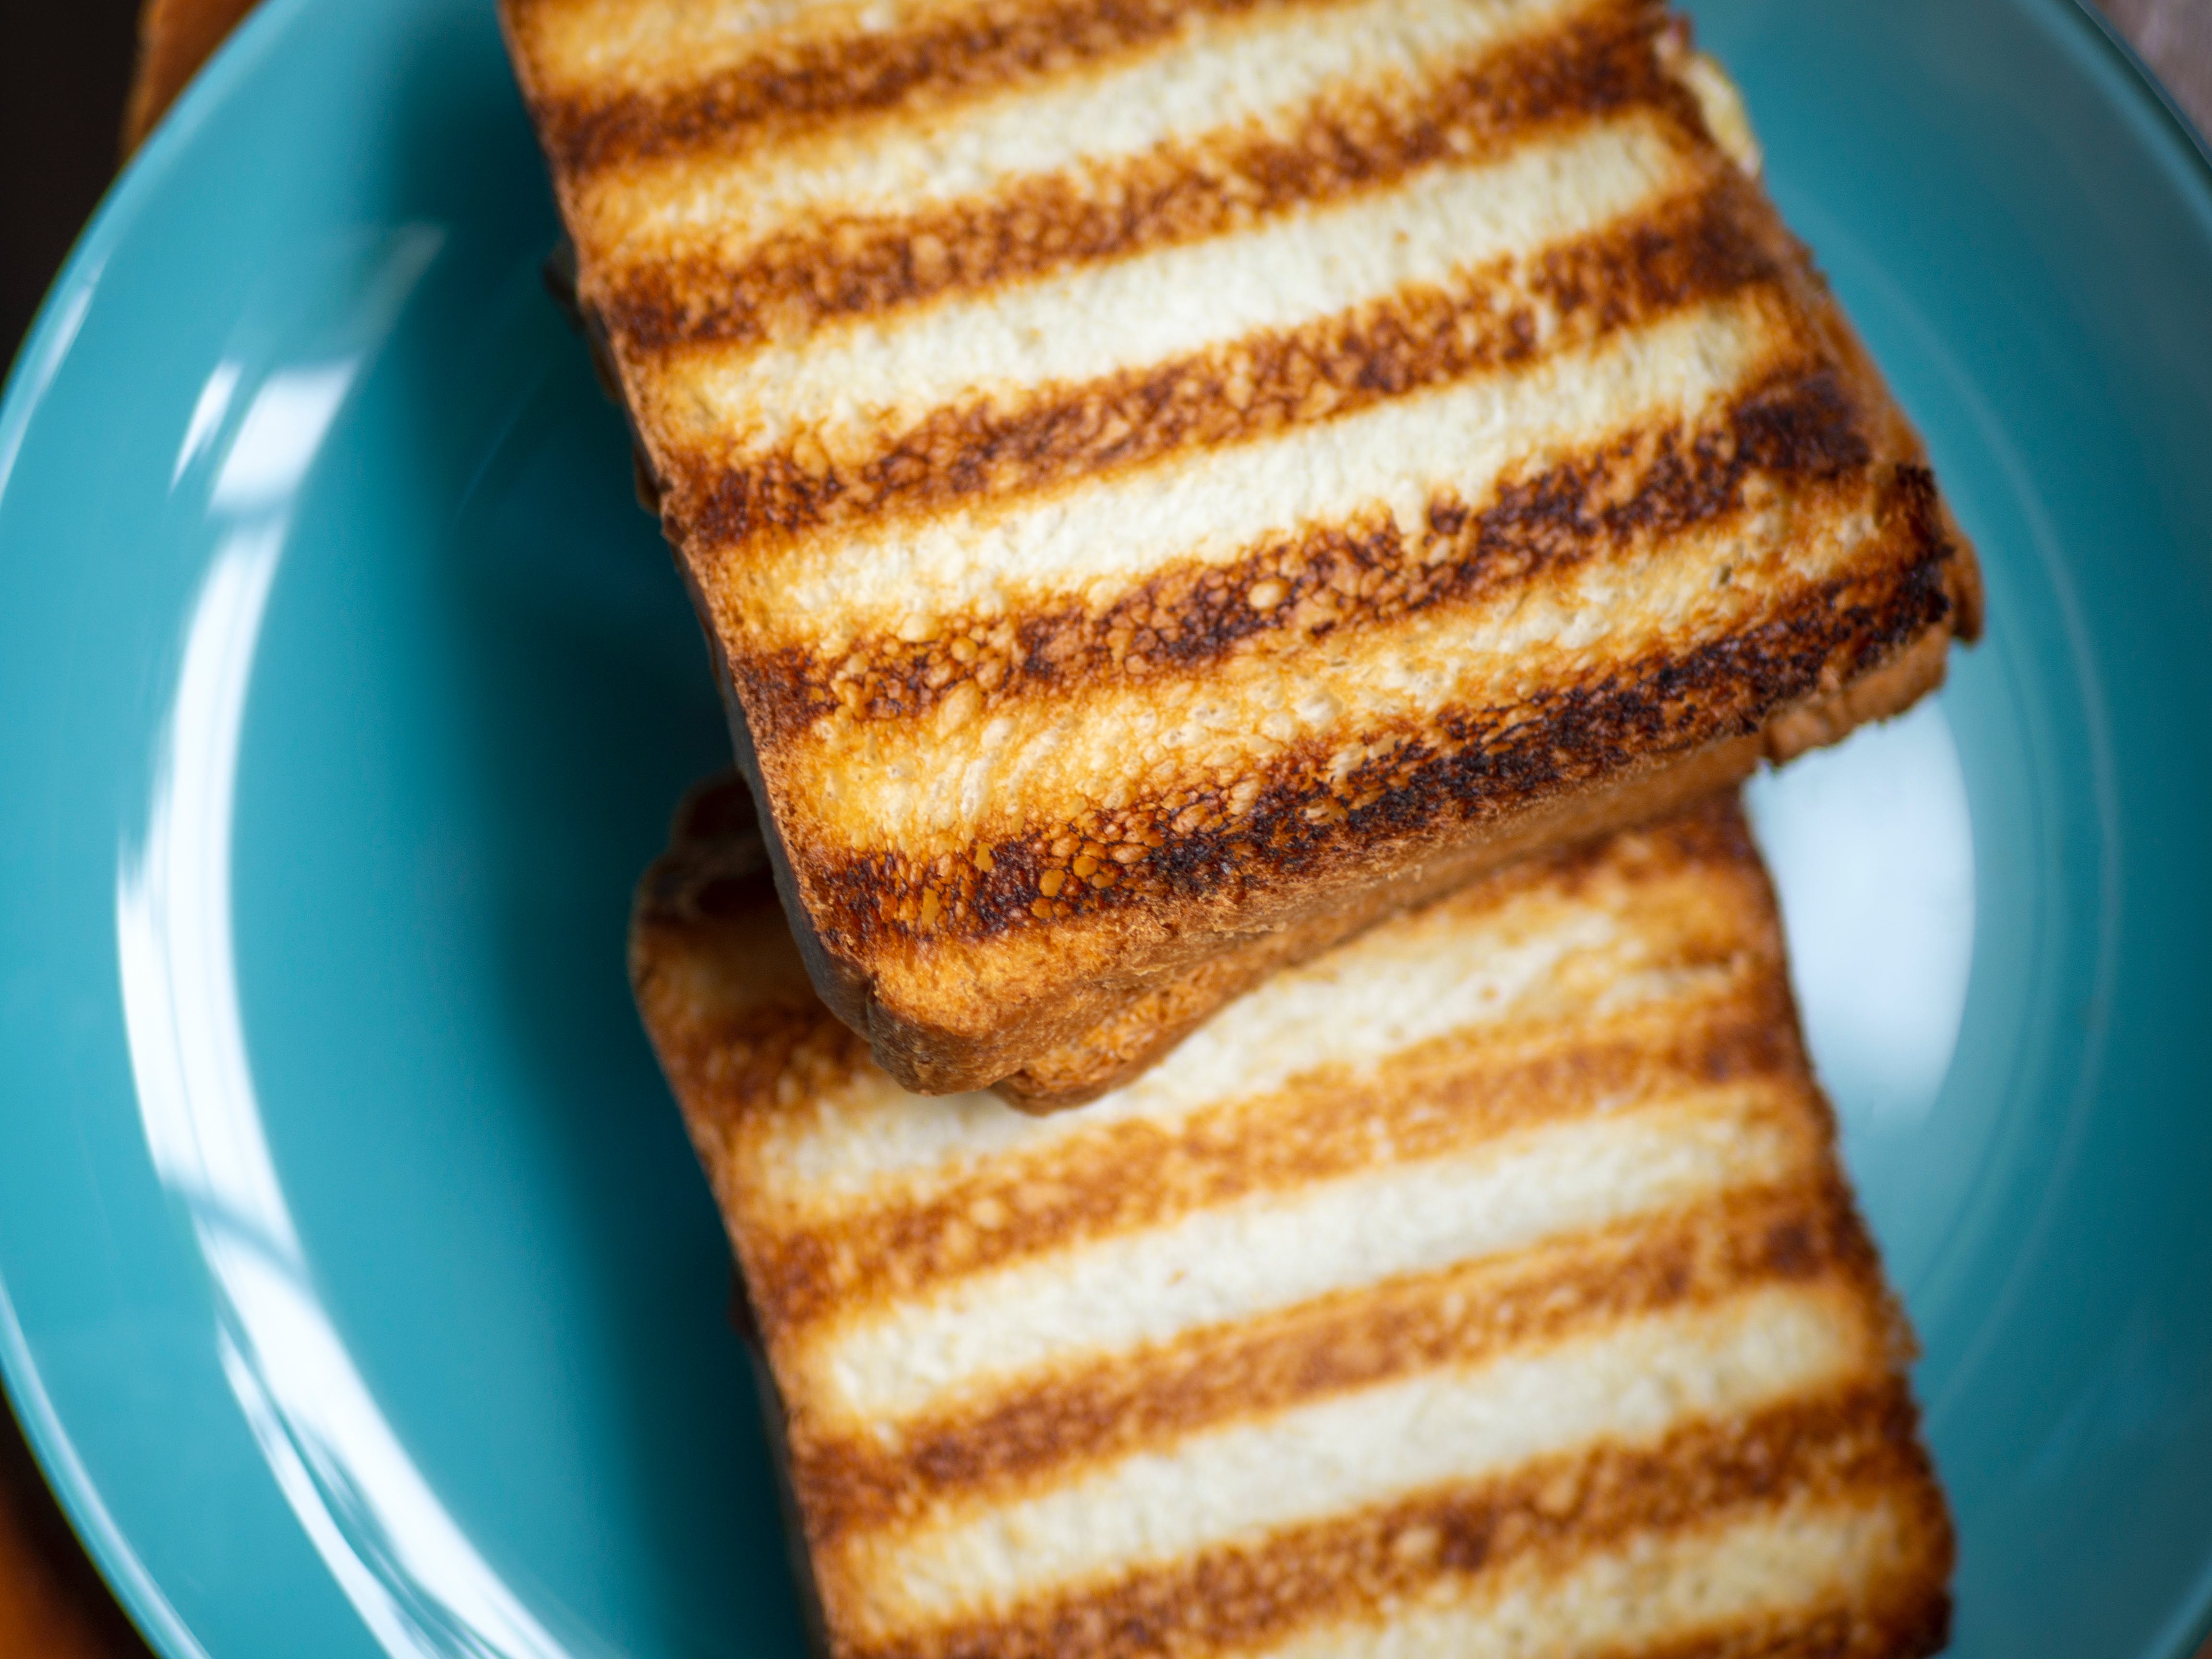 De burnt-toast theorie.